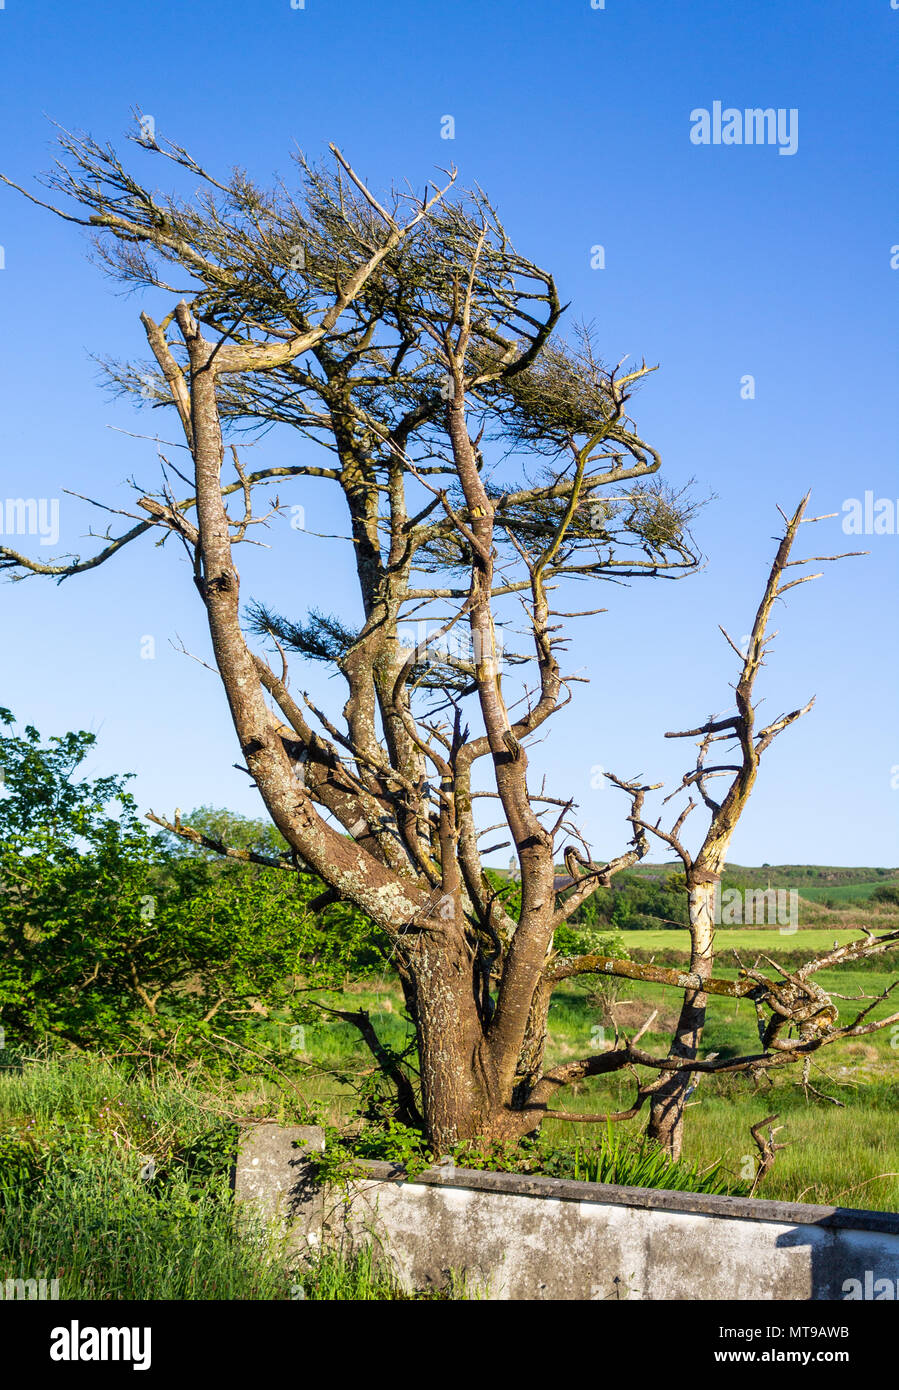 Avec des branches de l'arbre exposée au vent poussé d'une façon constante par la direction du vent contre un ciel bleu. Banque D'Images